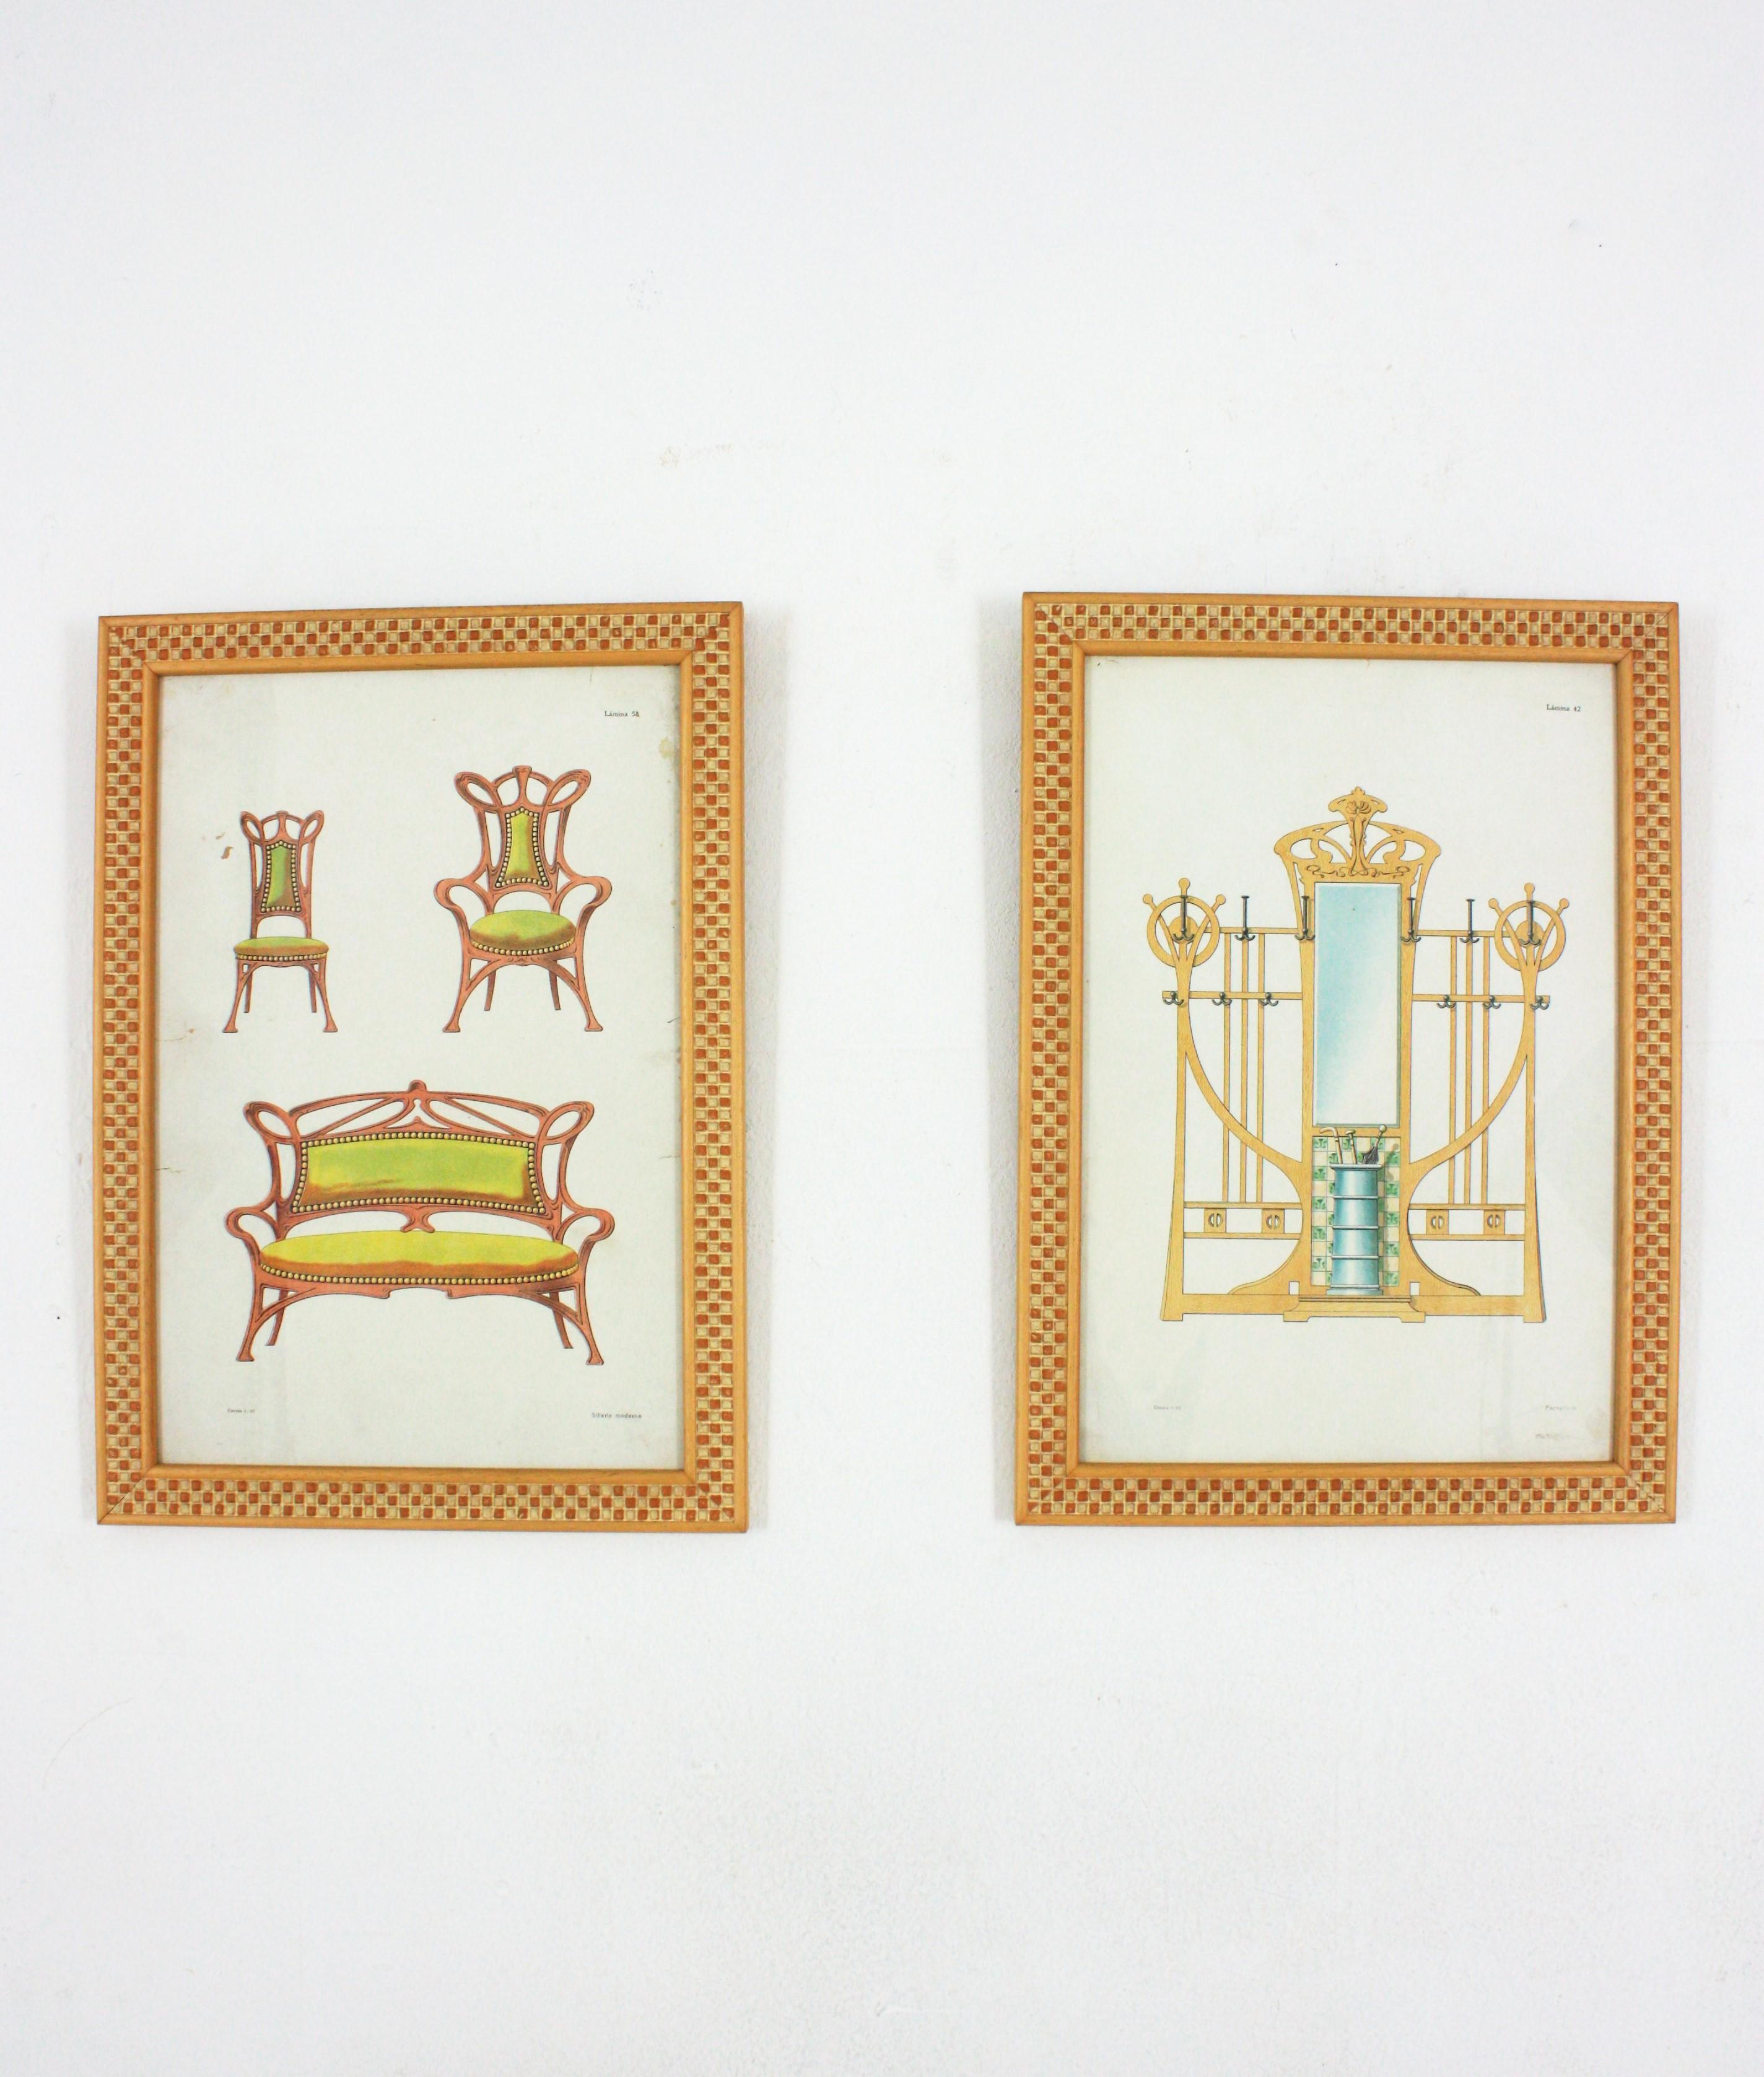 Paire de tirages encadrés non assortis représentant des meubles Art nouveau. Espagne, années 1920-1930
Nouvellement encadré il y a environ 20 ans.
Mesures : 47 cm H x 33,5 cm L x 2 cm P (y compris le cadre).
 